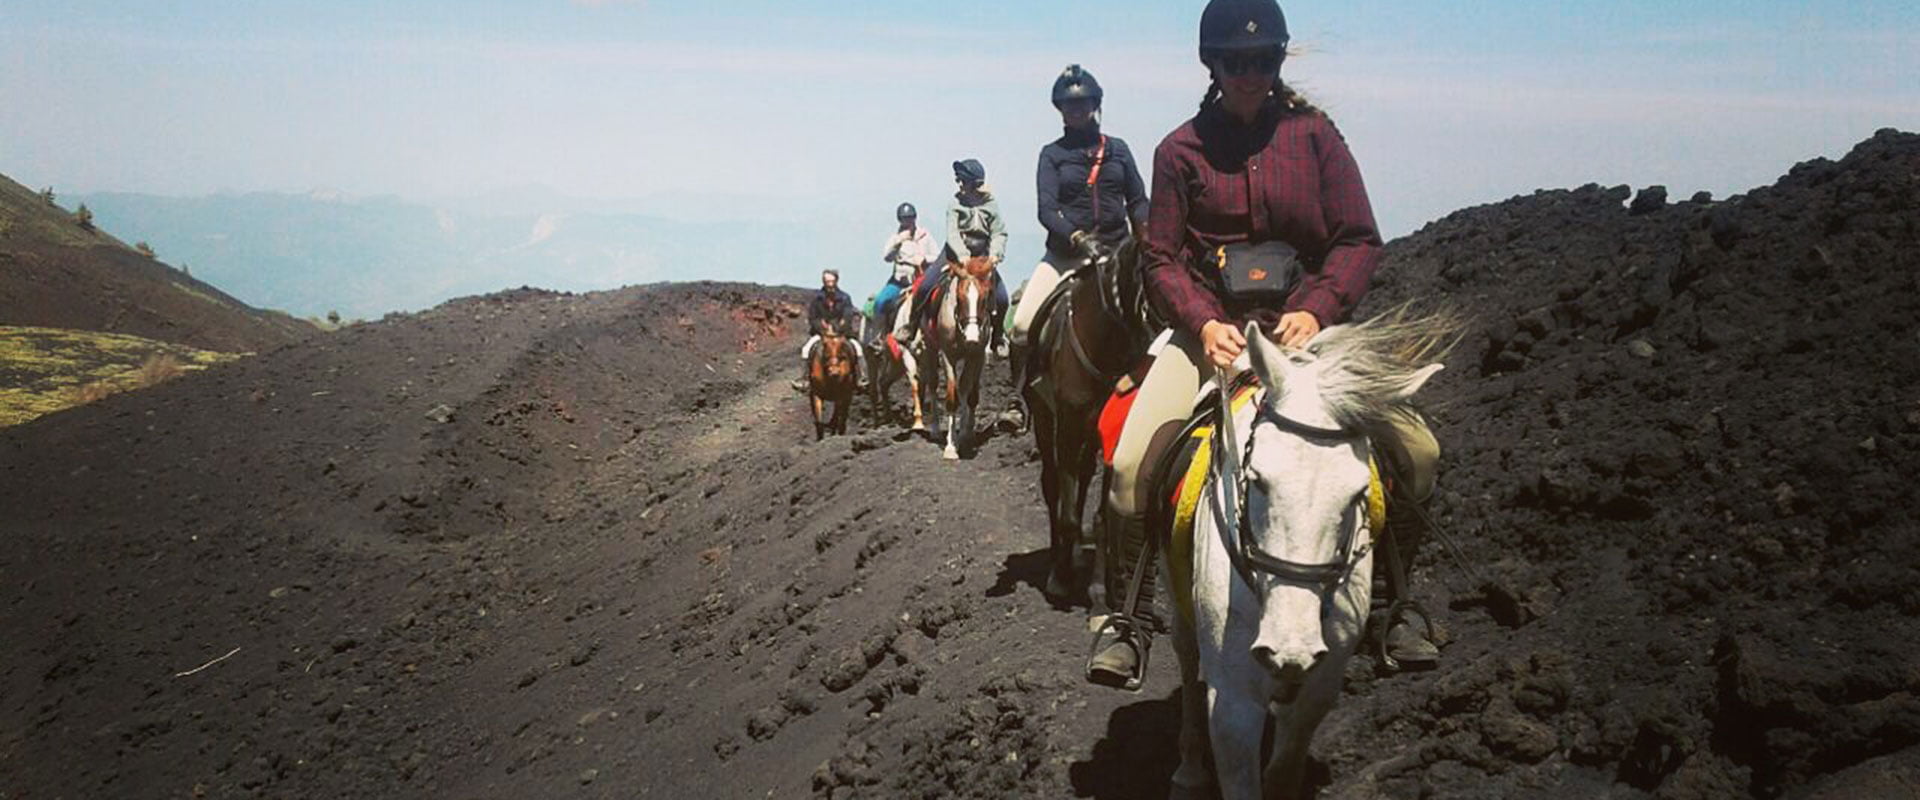 Etna horse treking